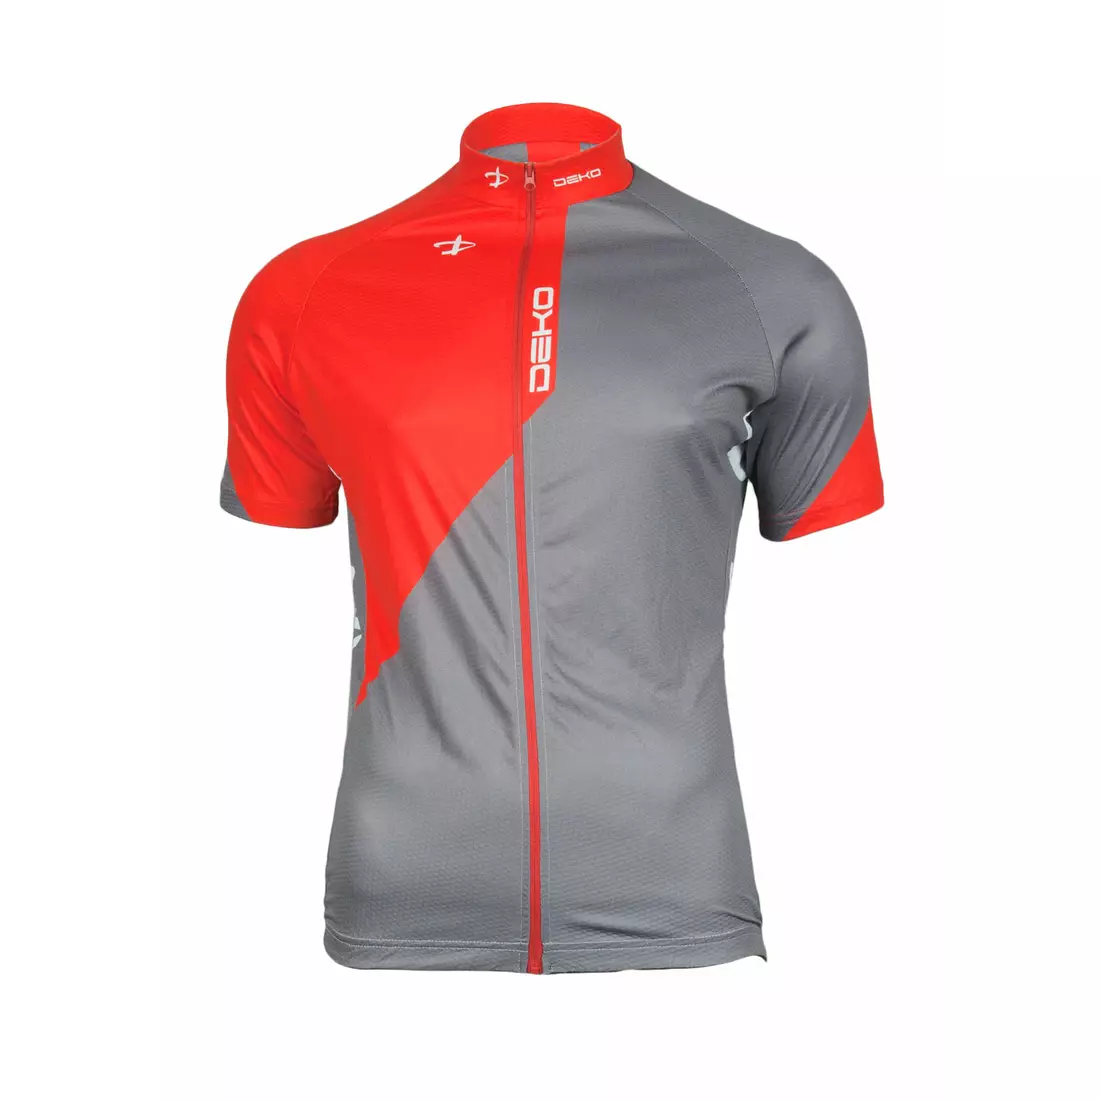 DEKO CHARCOAL - pánsky cyklistický set: kraťasy + dres, čierna, šedá a červená